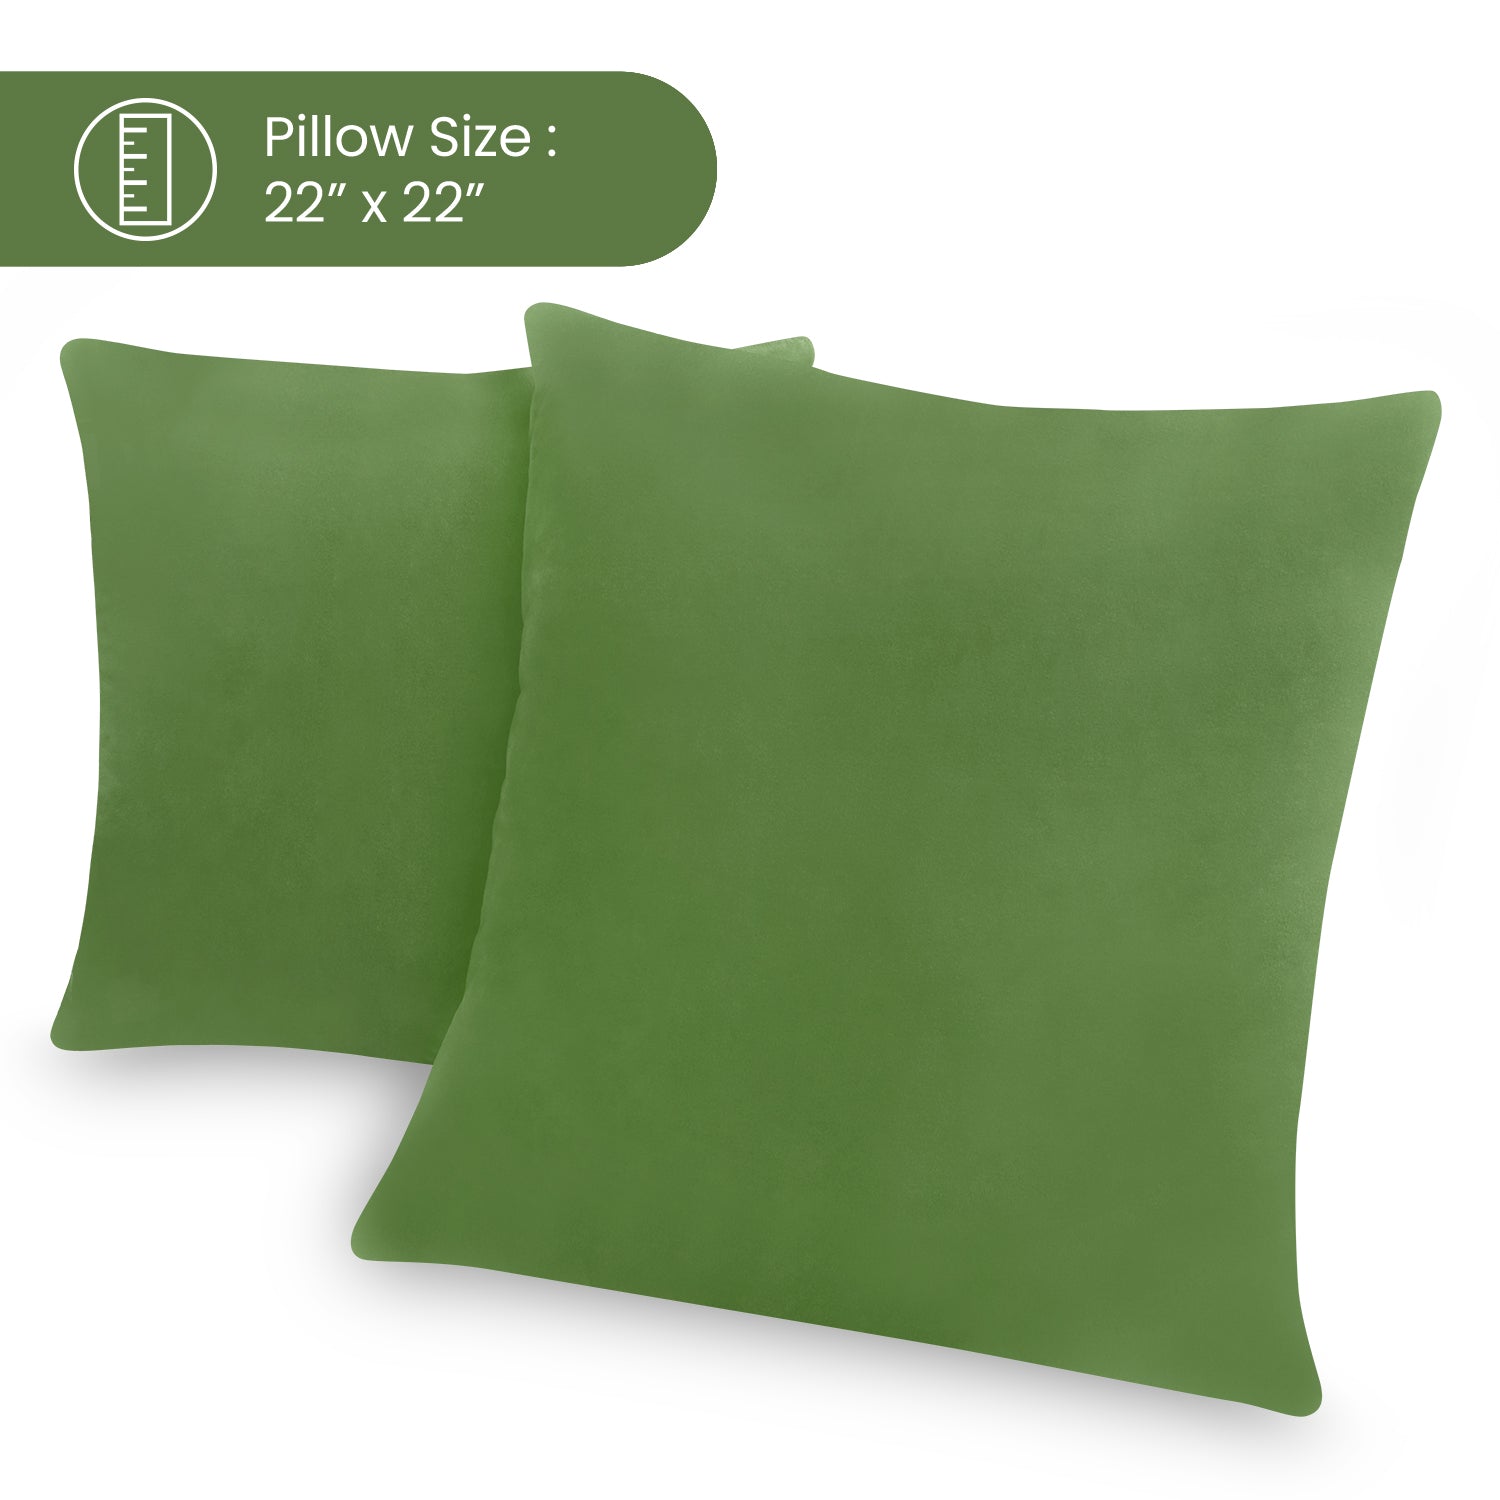 Sleepsia Throw Pillow Covers